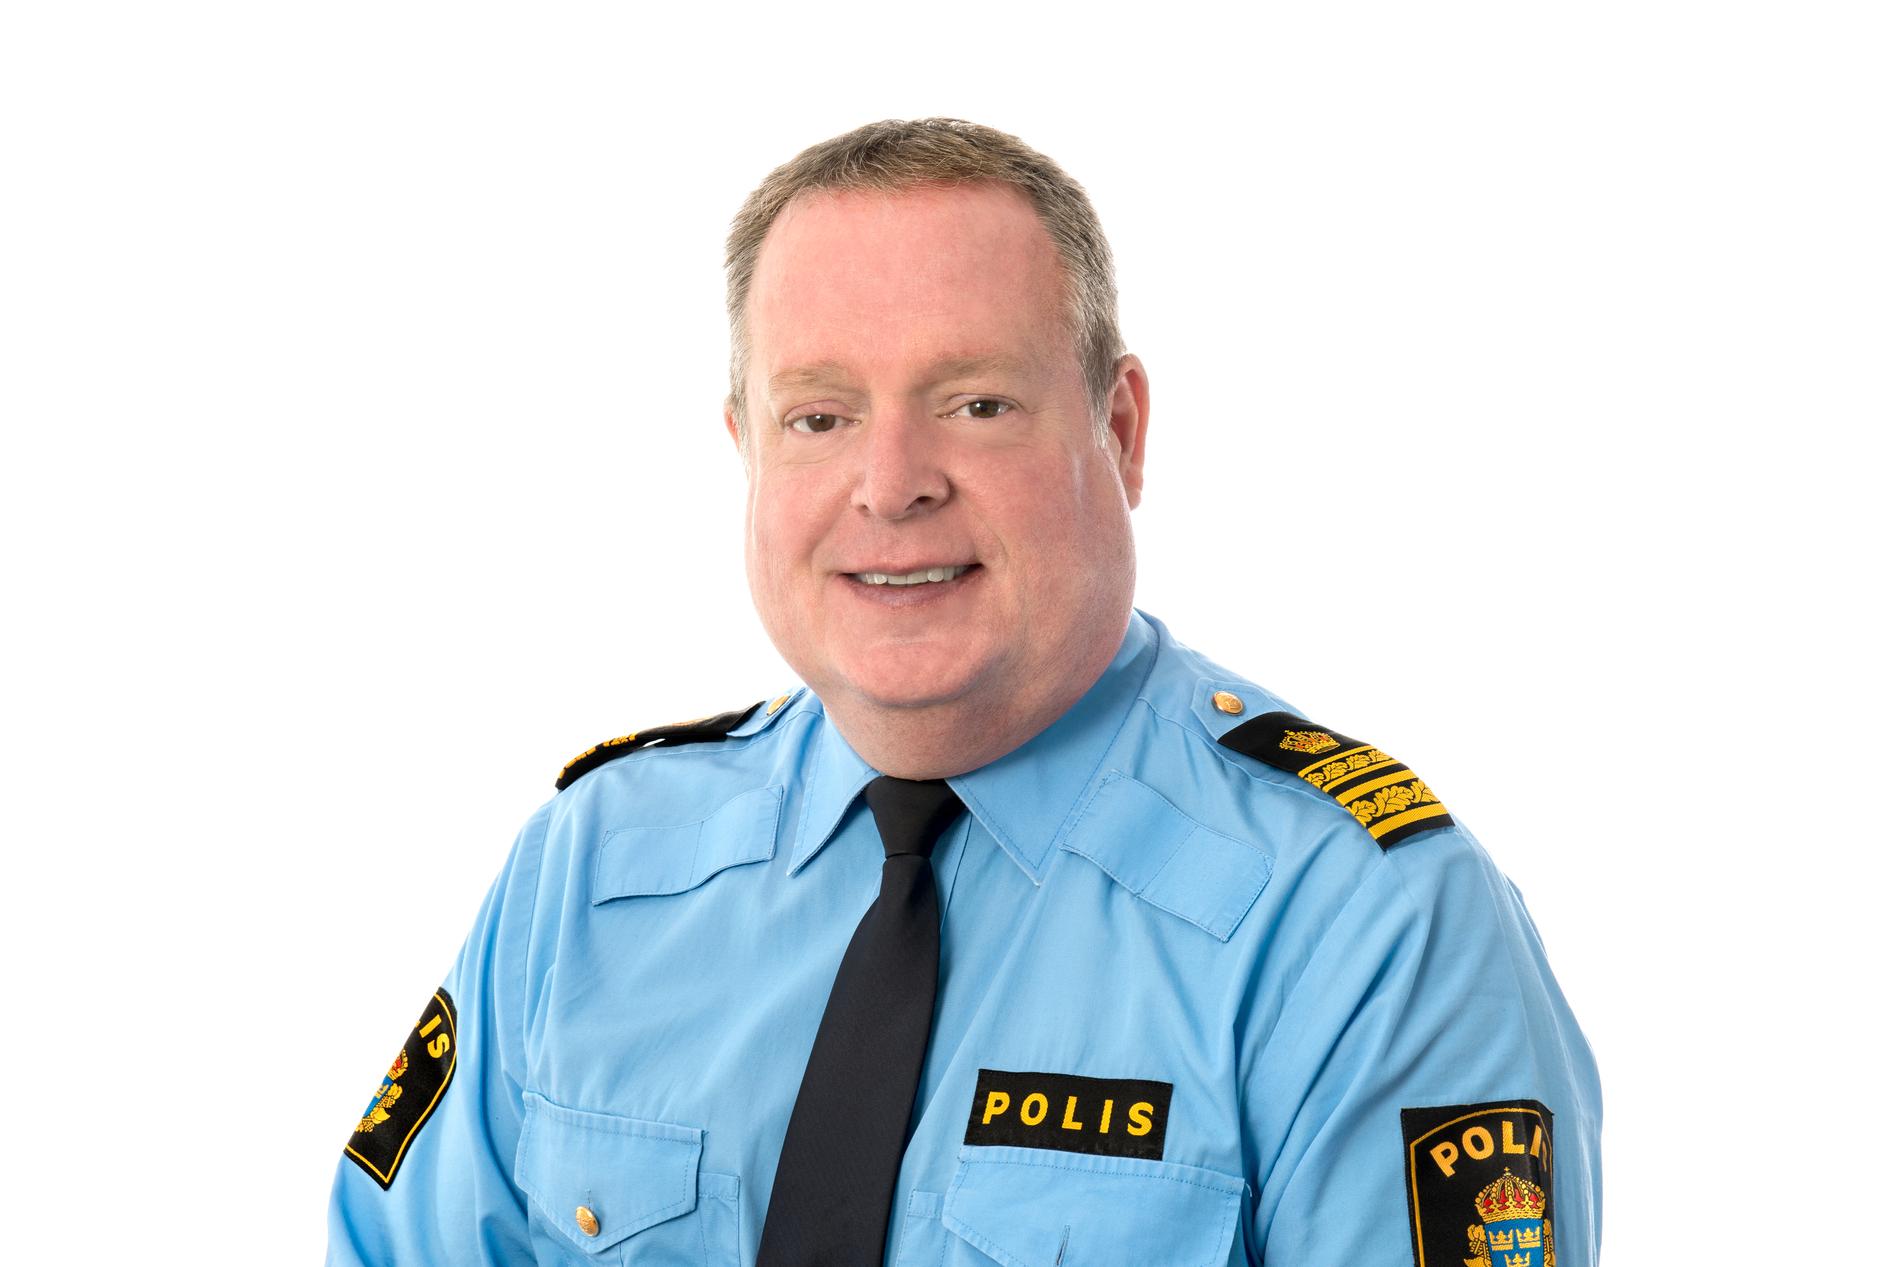 ”Det här är mångt och mycket ett uppdrag som ligger utanför vårt uppdrag”, säger Per Halldén, polisområdeschef i Uppsala.